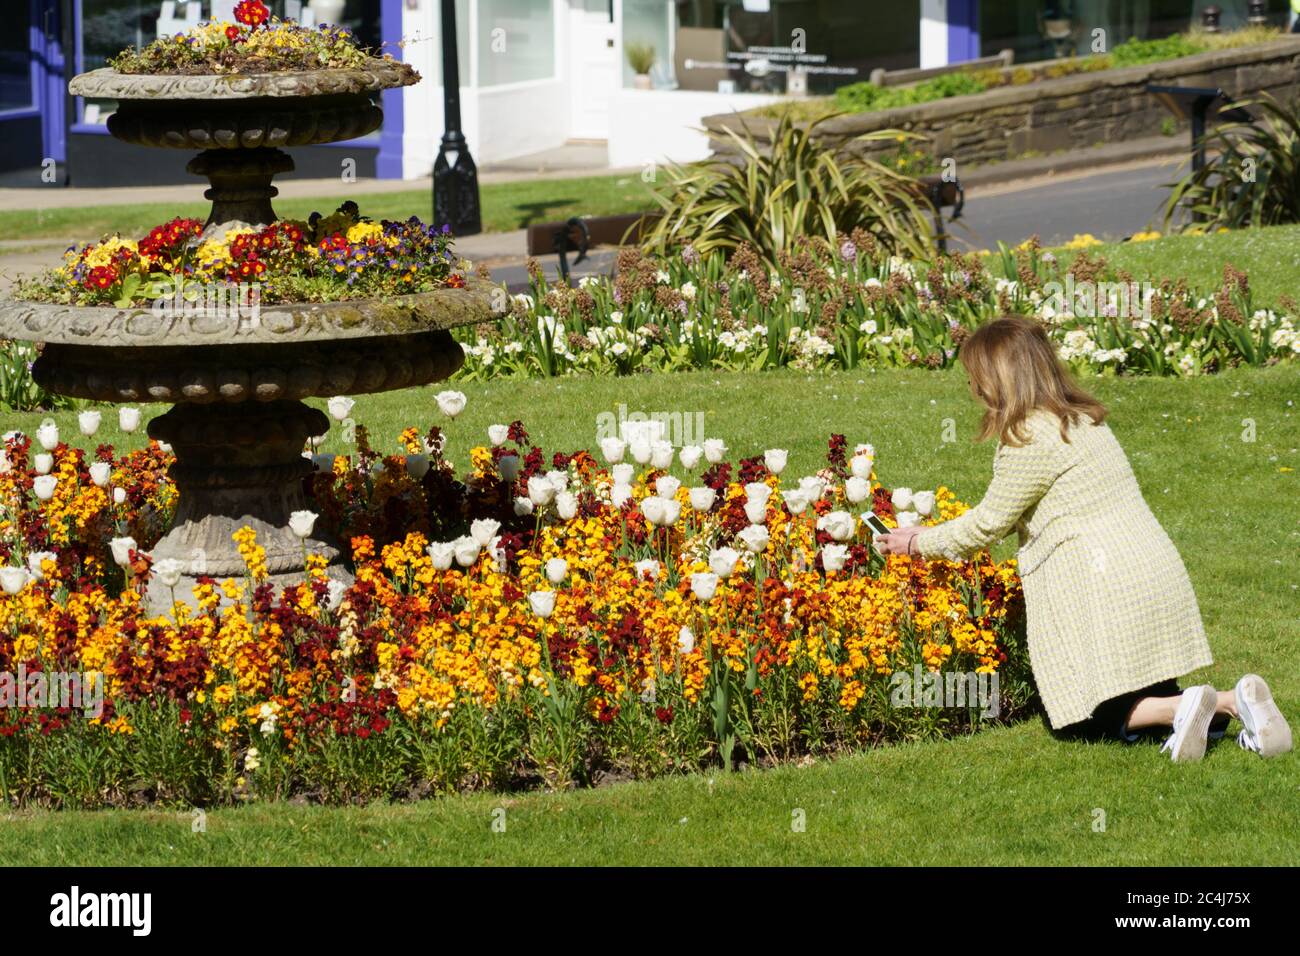 Femme s'agenouillant sur l'herbe pour prendre une photo des Tulips blancs dans un lit de fleurs circulaire avec son téléphone mobile, Harrogate, North Yorkshire, Angleterre, Royaume-Uni. Banque D'Images